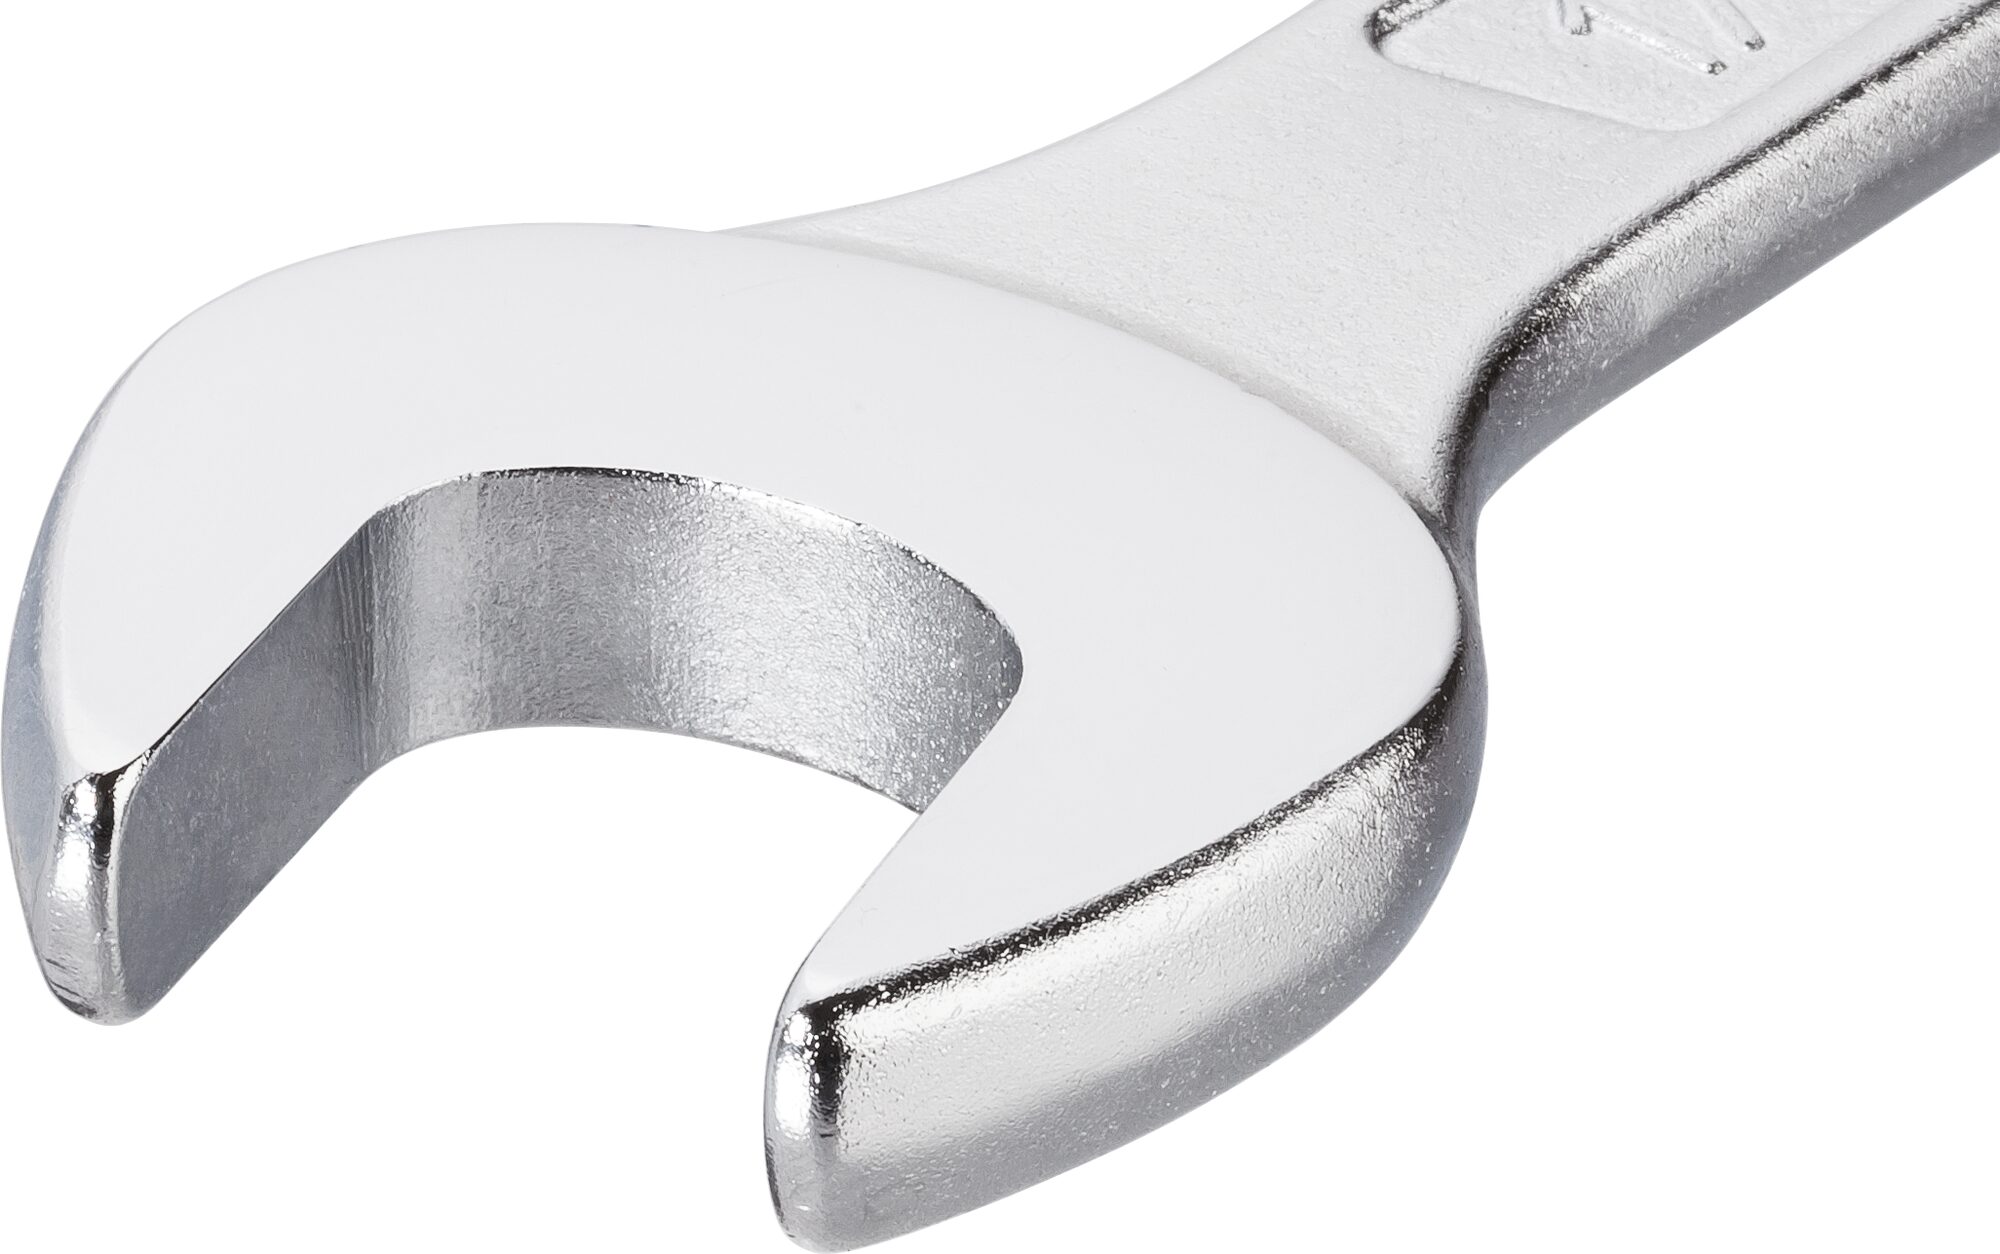 HAZET Ring-Maulschlüssel 600N-24 · Außen Doppel-Sechskant-Tractionsprofil · 24 mm